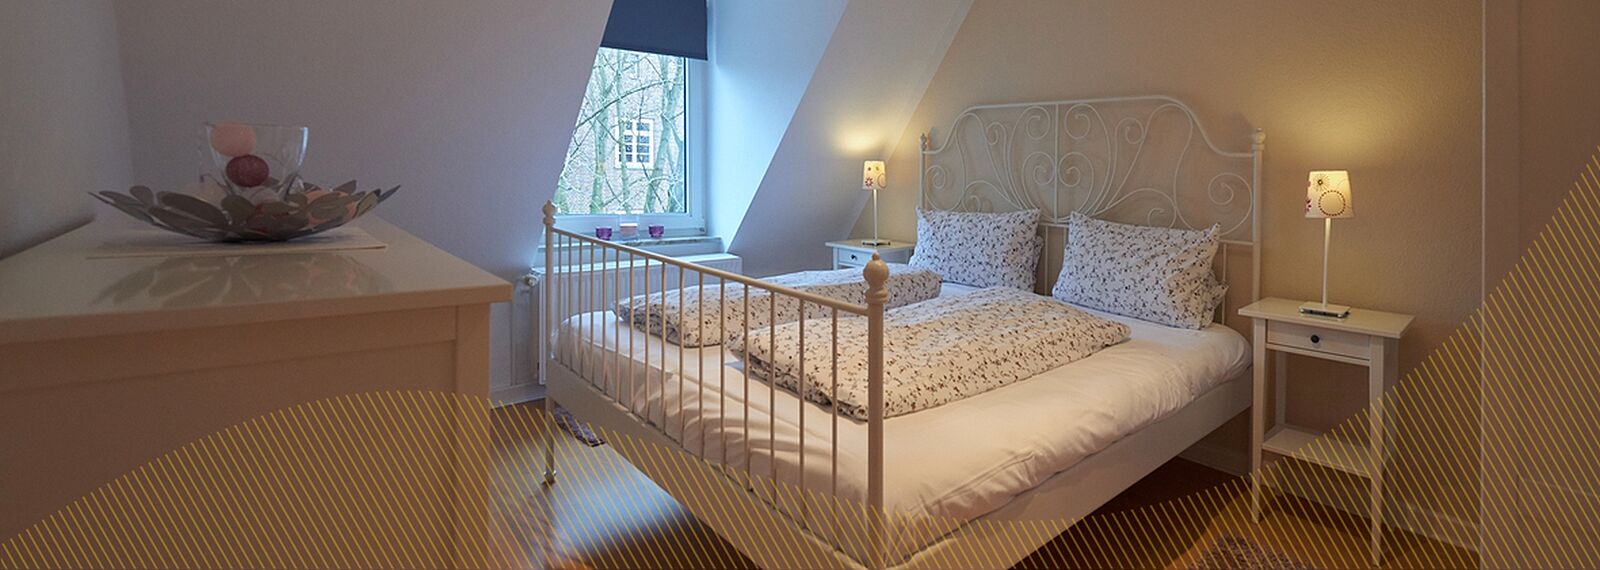 Schlafzimmer mit Dachschräge und einem Doppelbett aus Metall, helle Bettwäsche mit Blumen